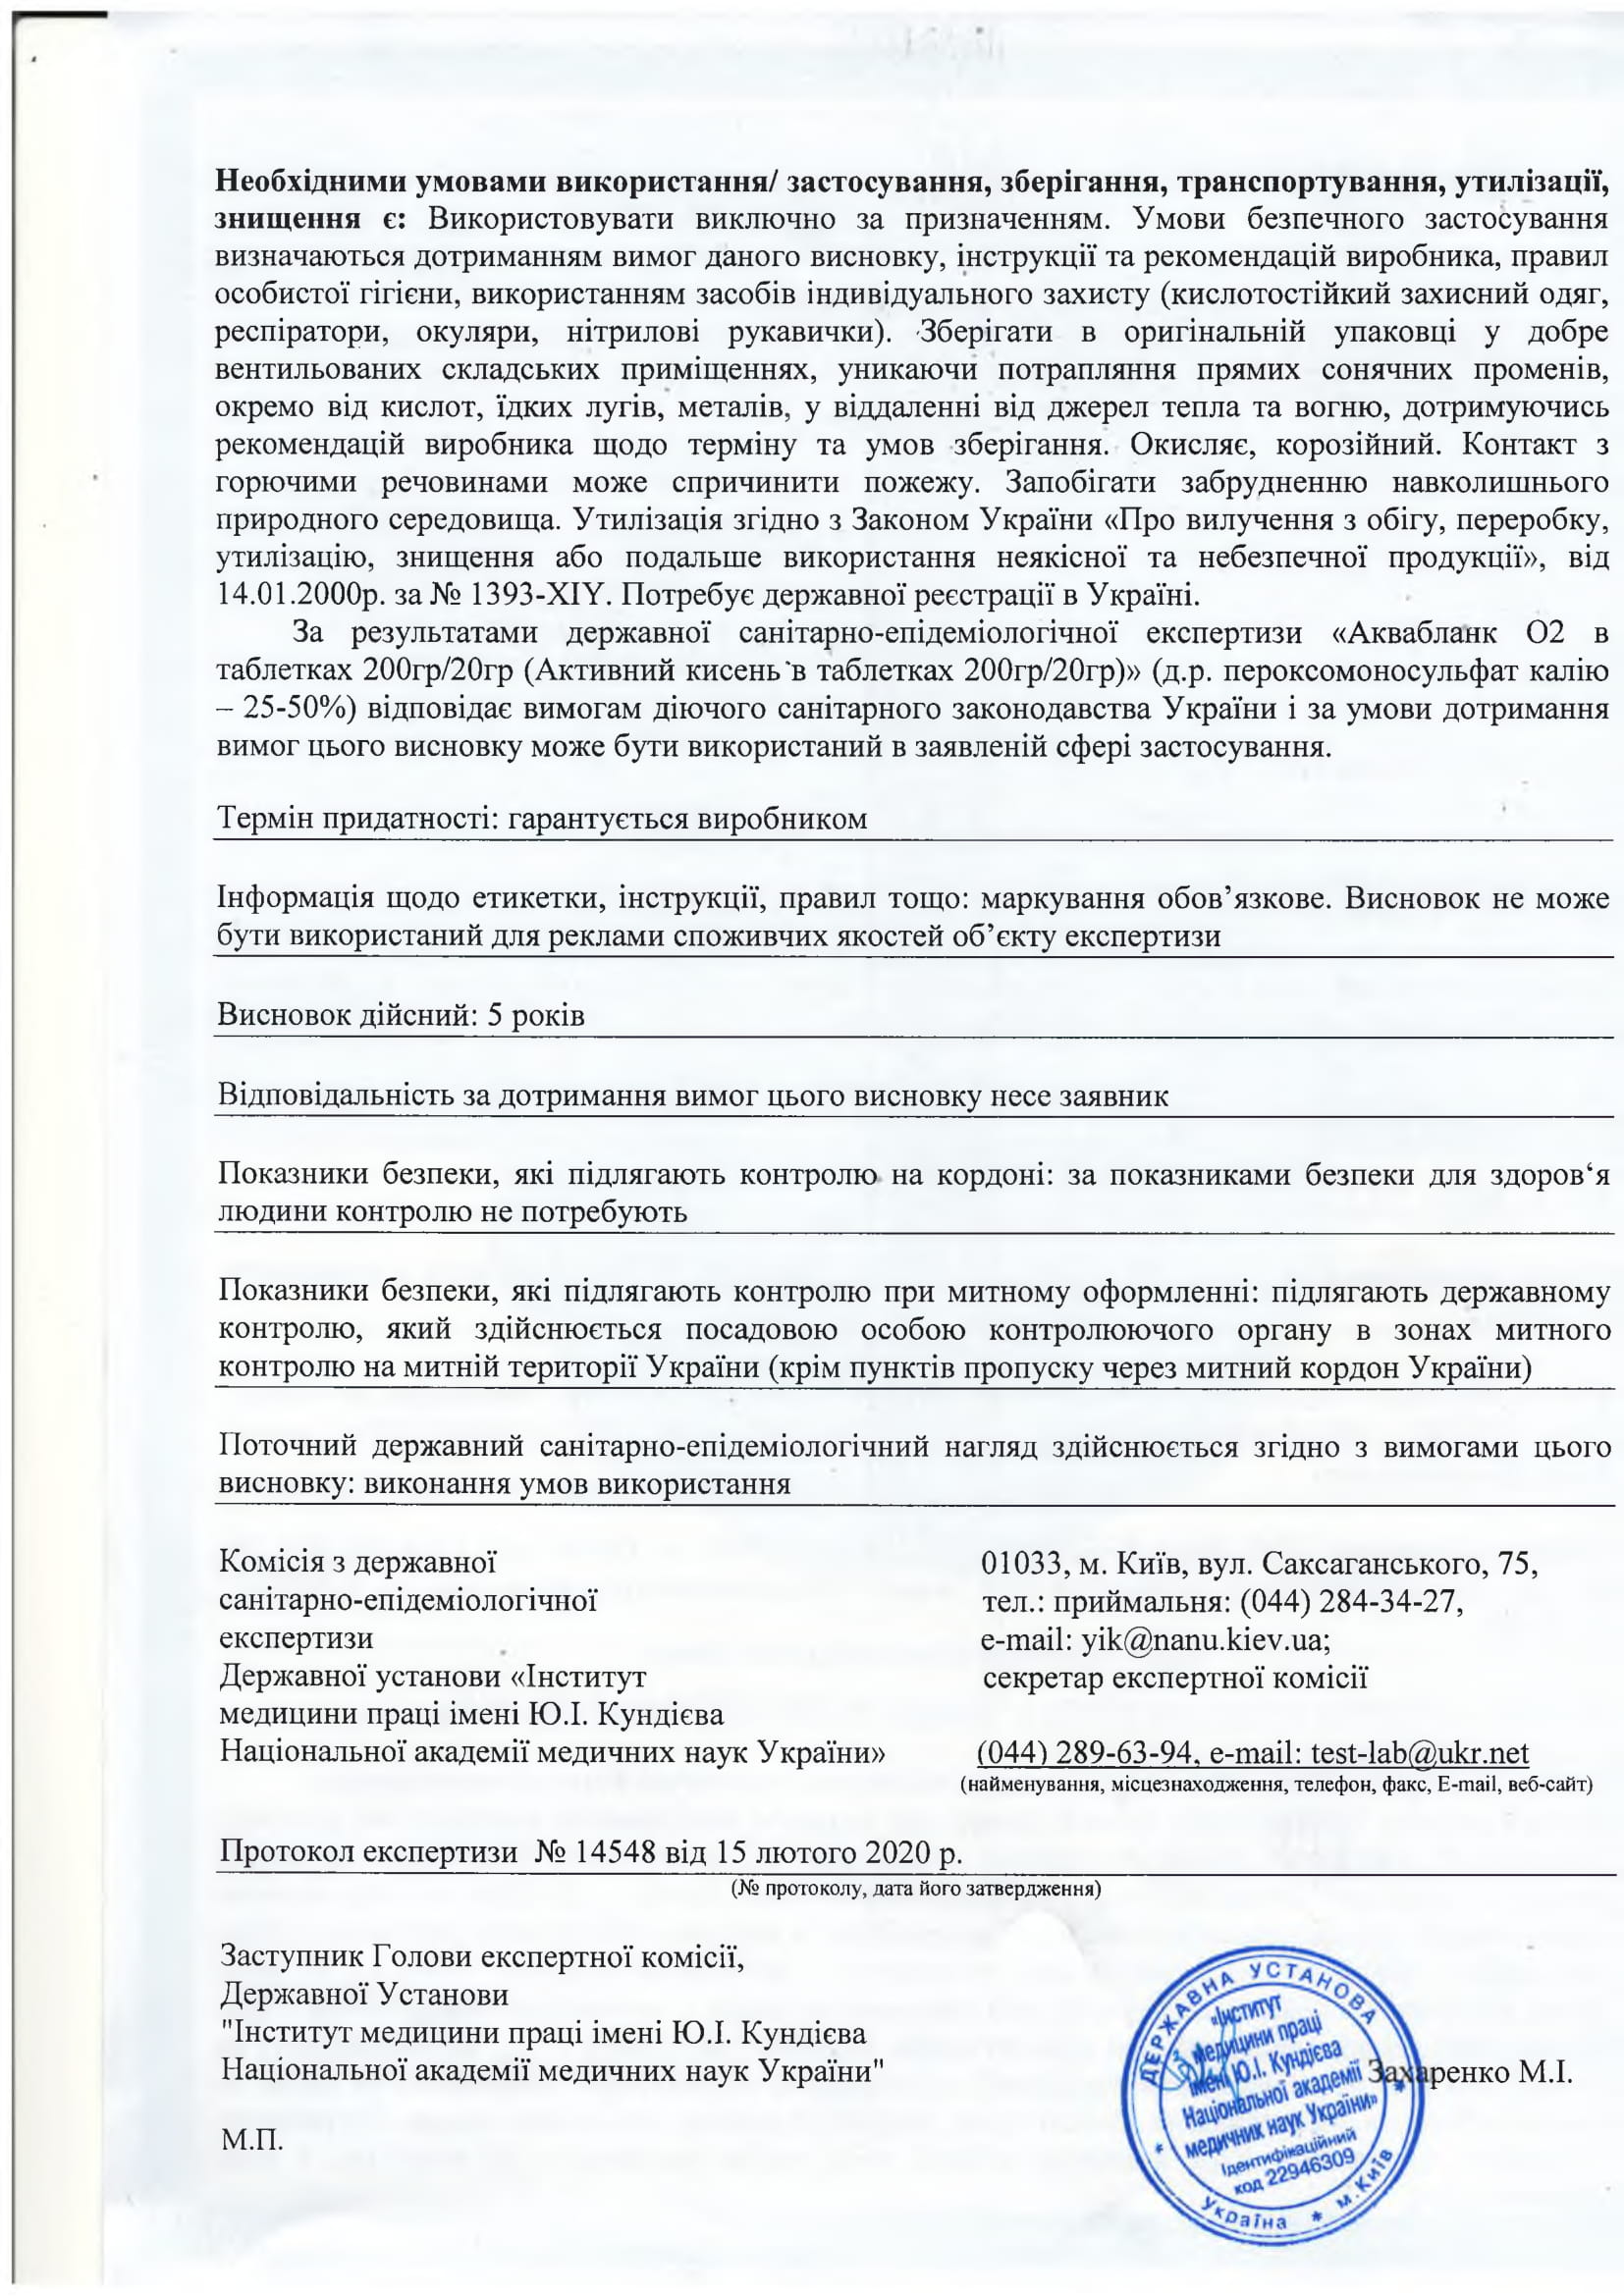 Аквабланк О2 в таблетках Chemoform, продавец Евроминерал Украина